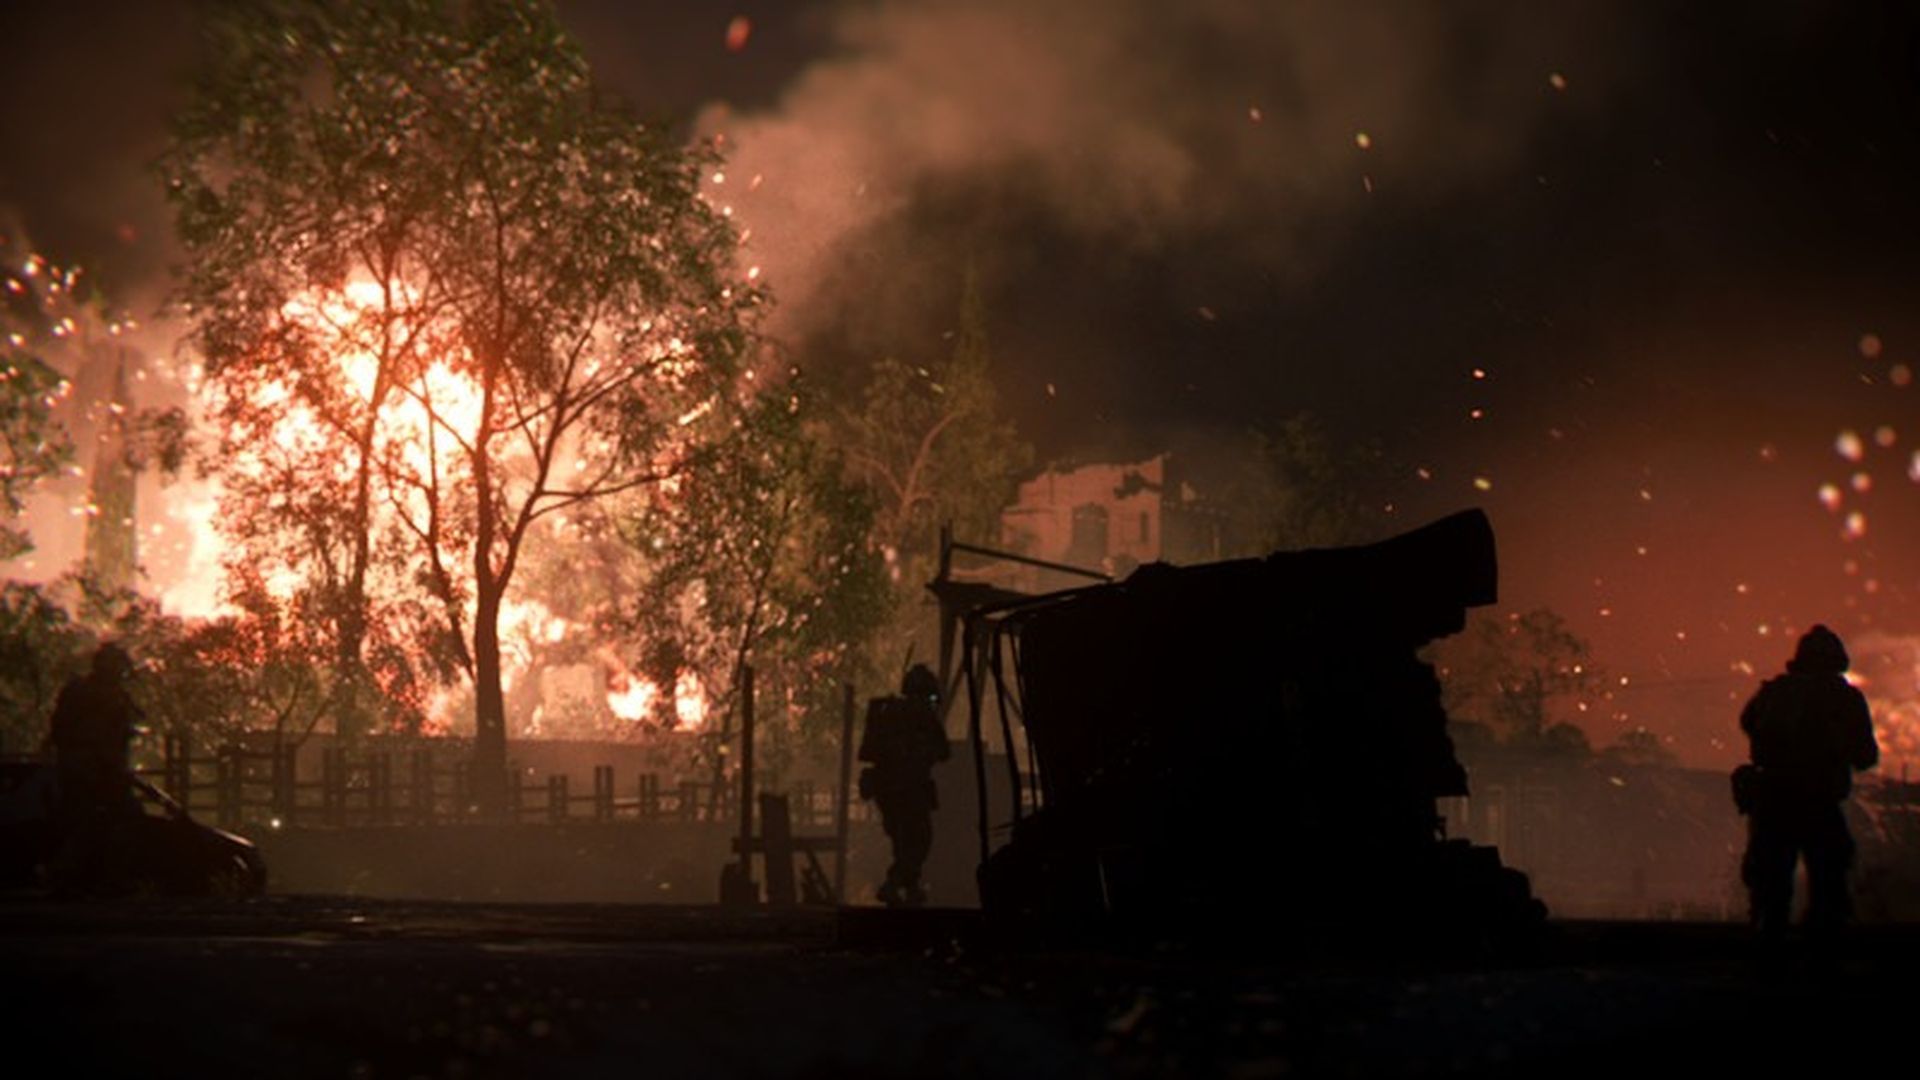 Os fãs esperam Modern Warfare 2 há muito tempo.  Agora finalmente temos o trailer oficial, vamos nos aprofundar nos detalhes sobre a data de lançamento, mods de jogo e muito mais.